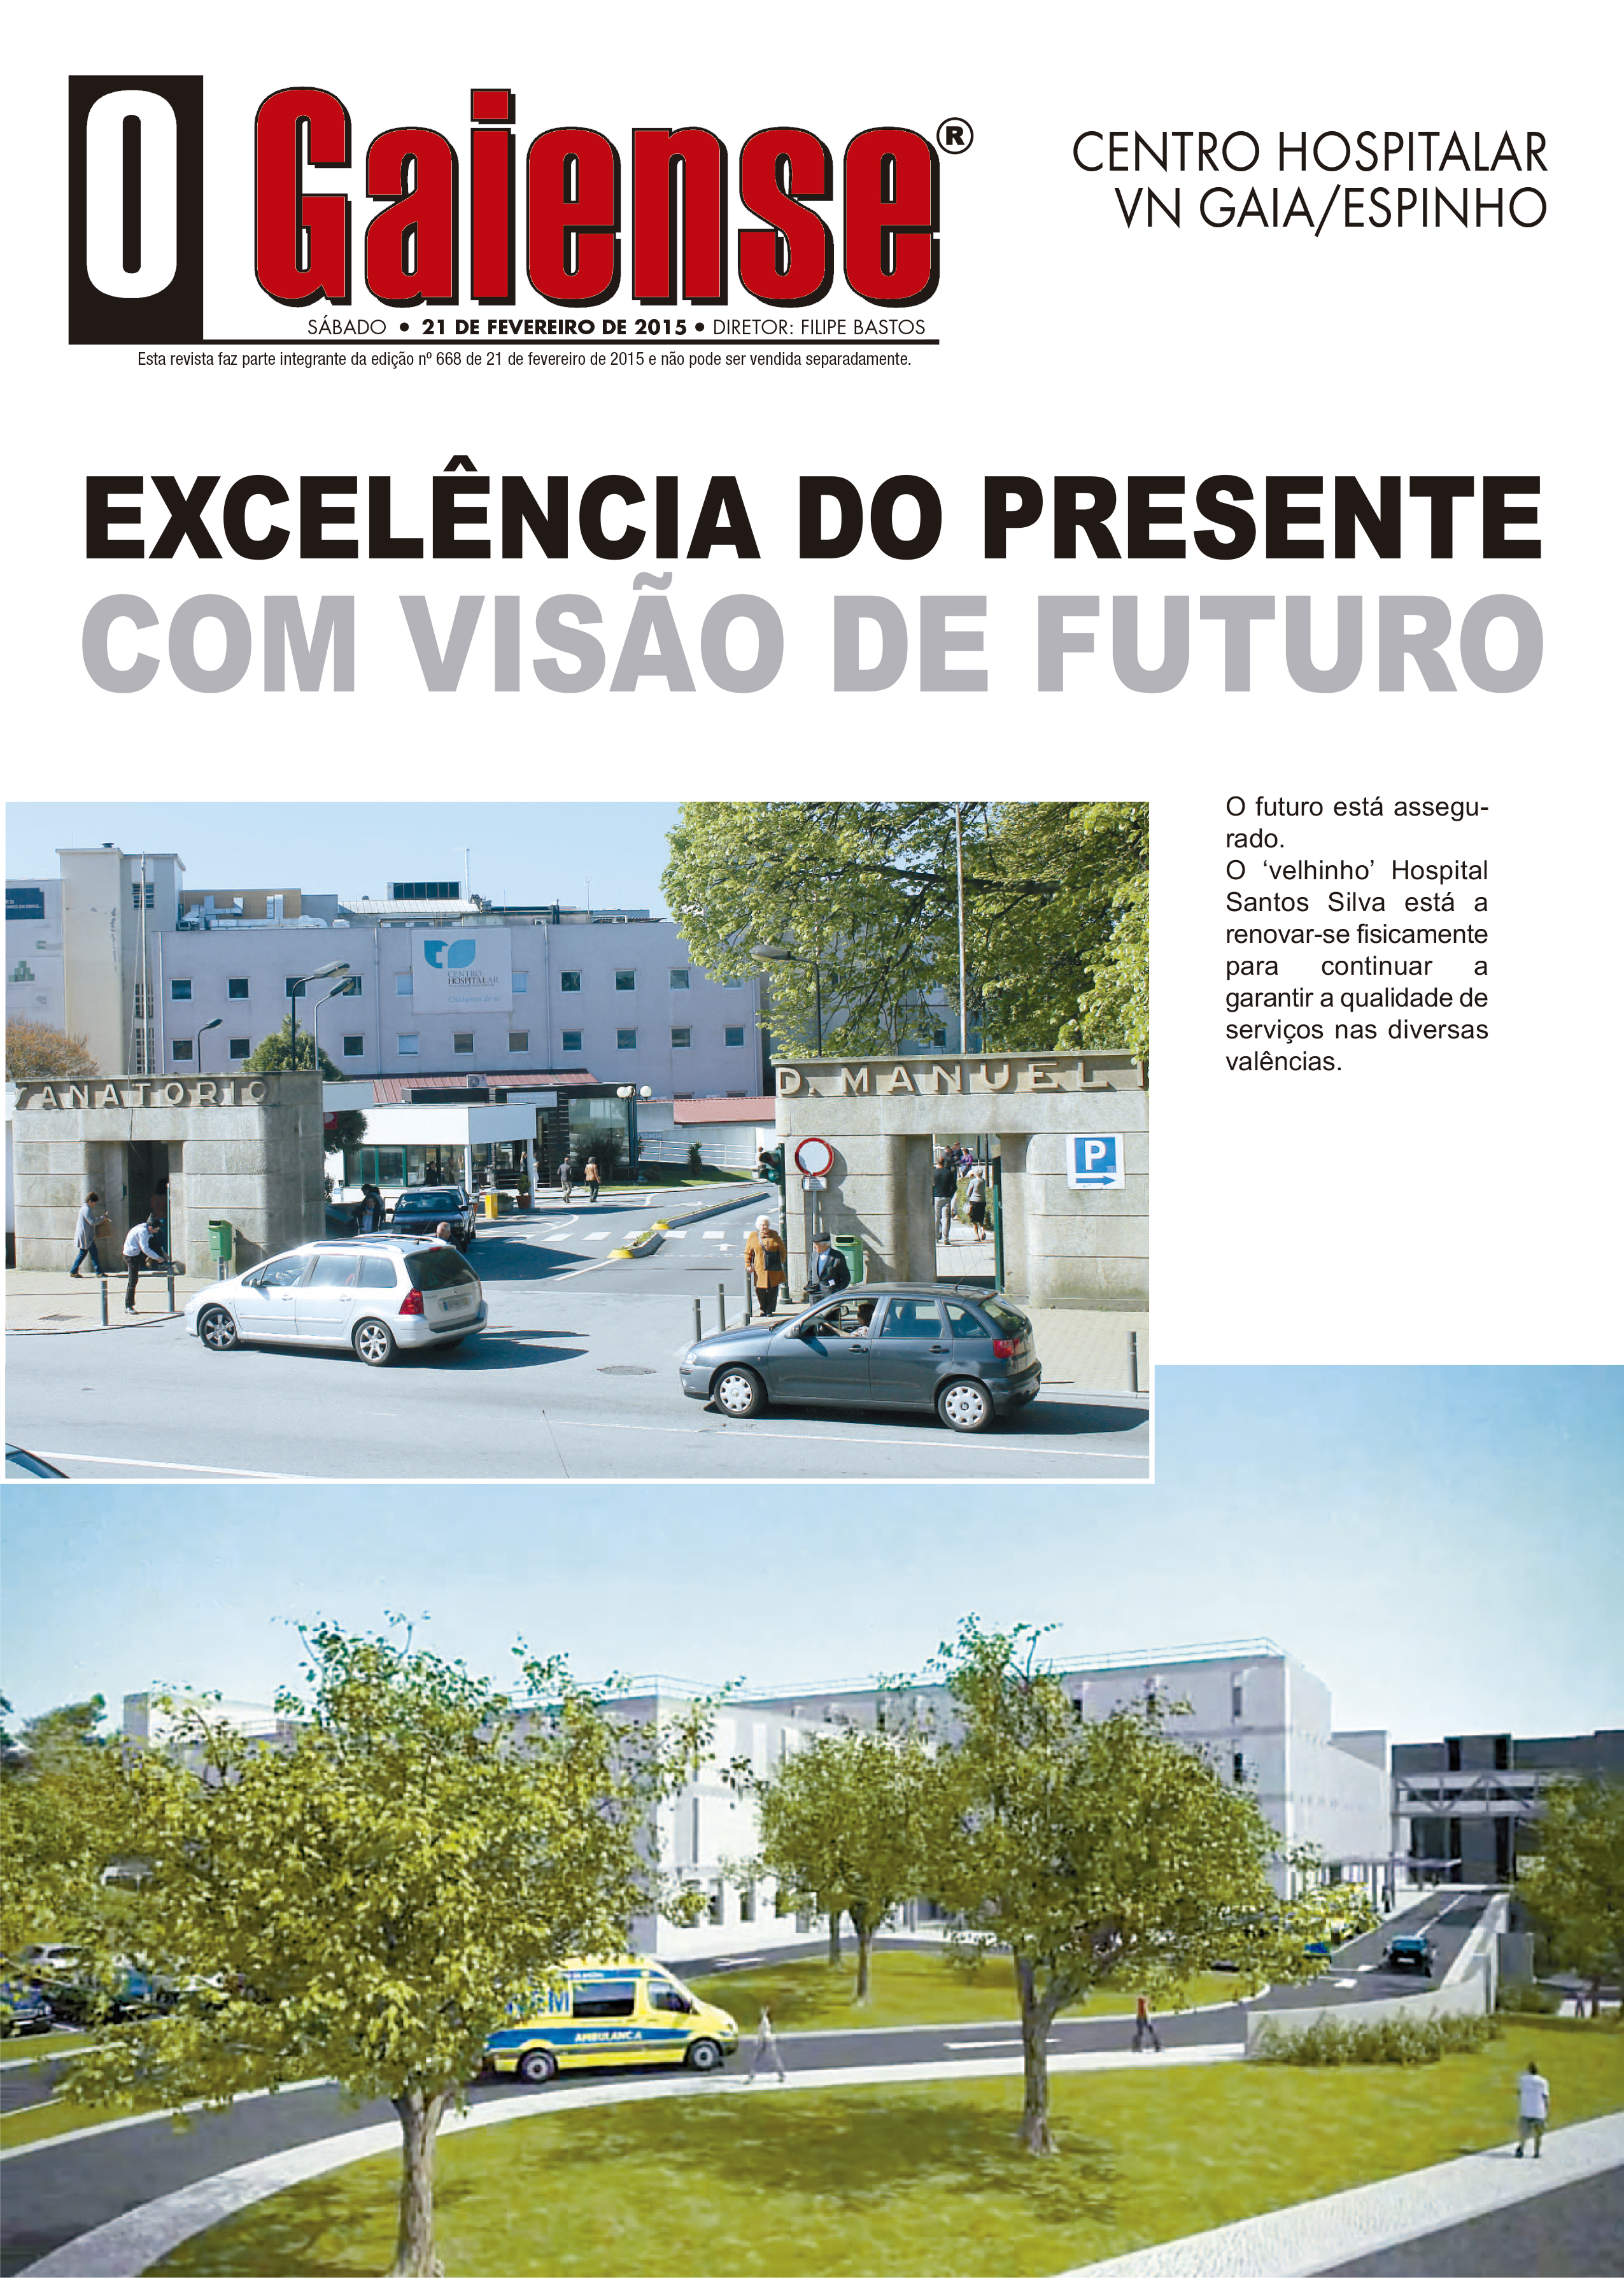 Capa da revista Centro Hospital V.N.Gaia/Espinho